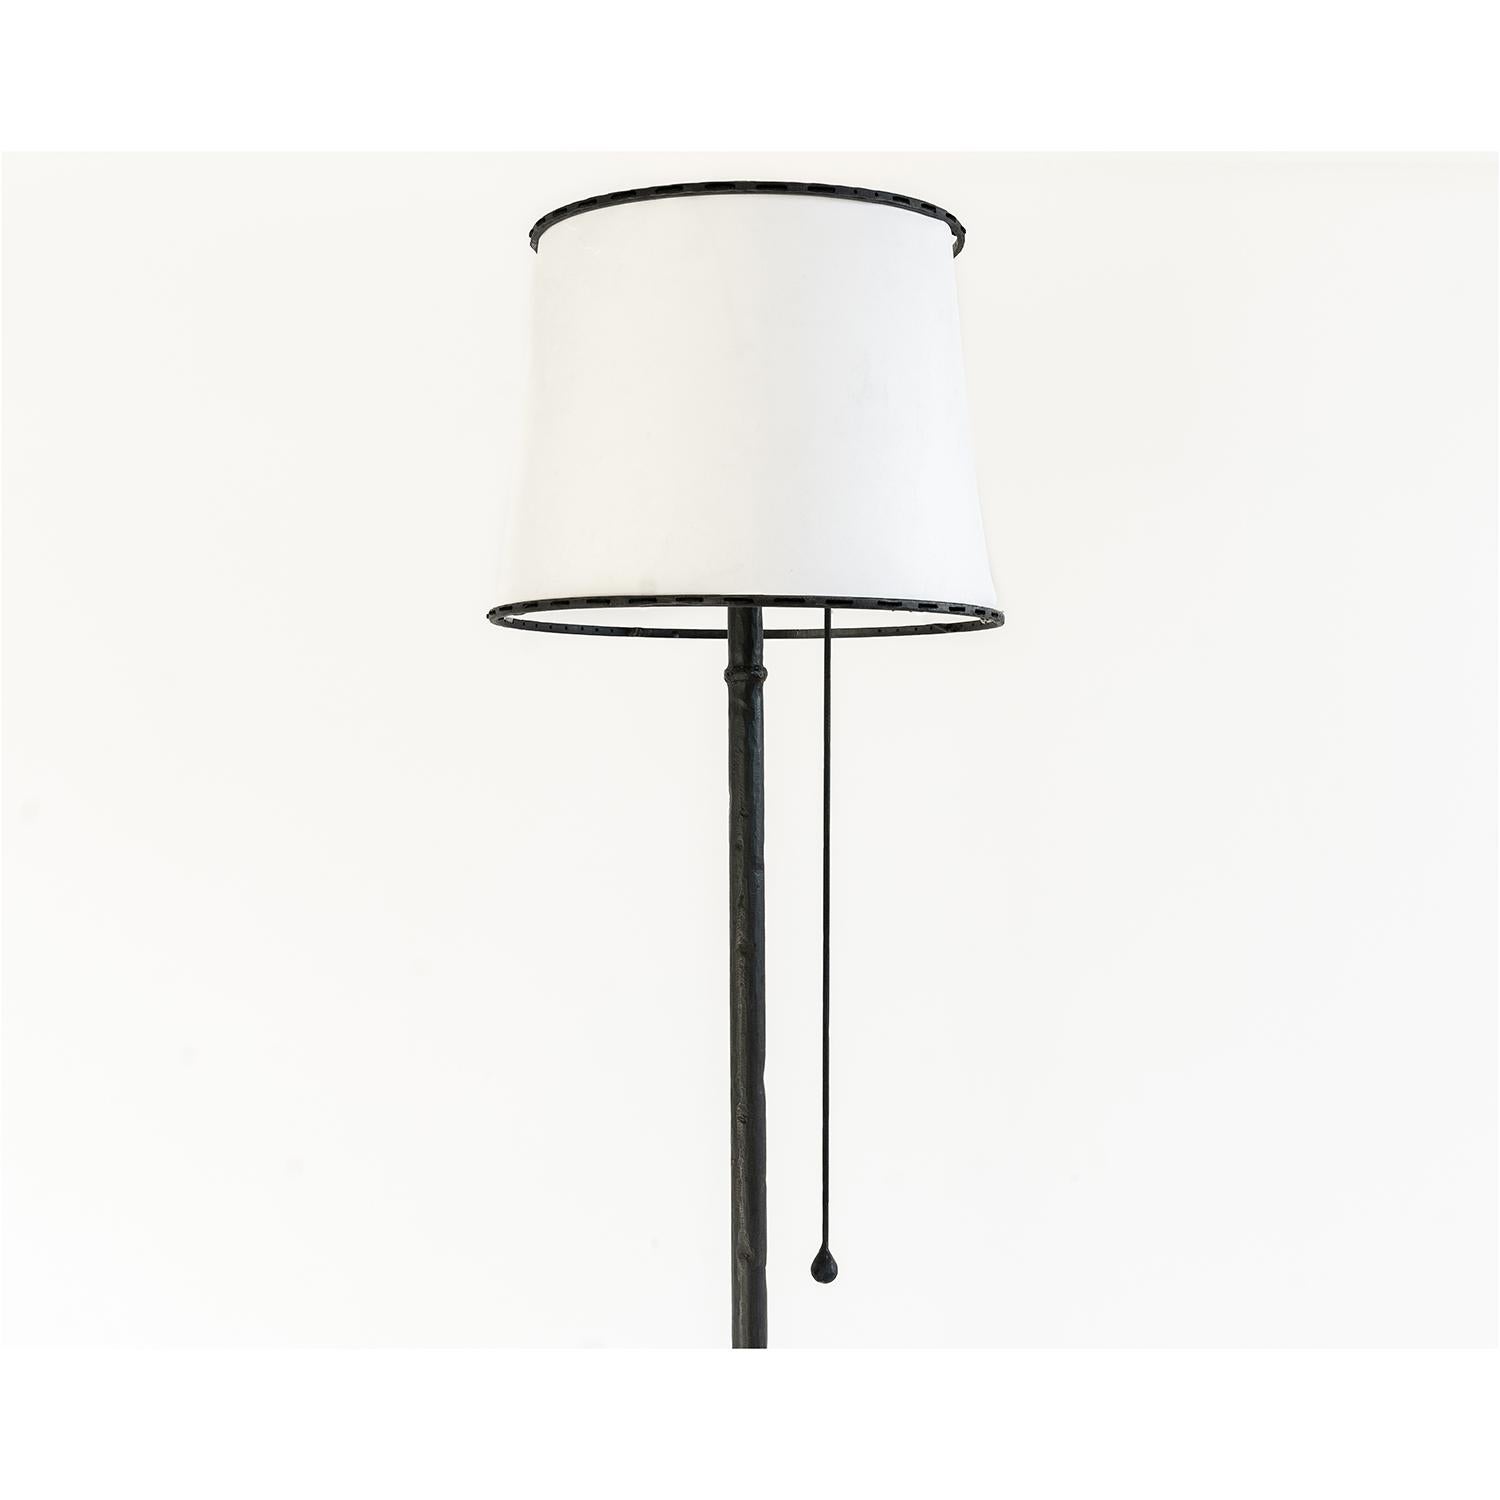 LAMPE NO. 1 
J.M. Szymanski
d. 2020

Ce lampadaire spécial est doté d'un abat-jour en lin et d'une base en acier sculpté. Une seule tirette en forme de goutte d'eau est utilisée pour faire fonctionner la lampe. 

Tailles sur mesure disponibles.